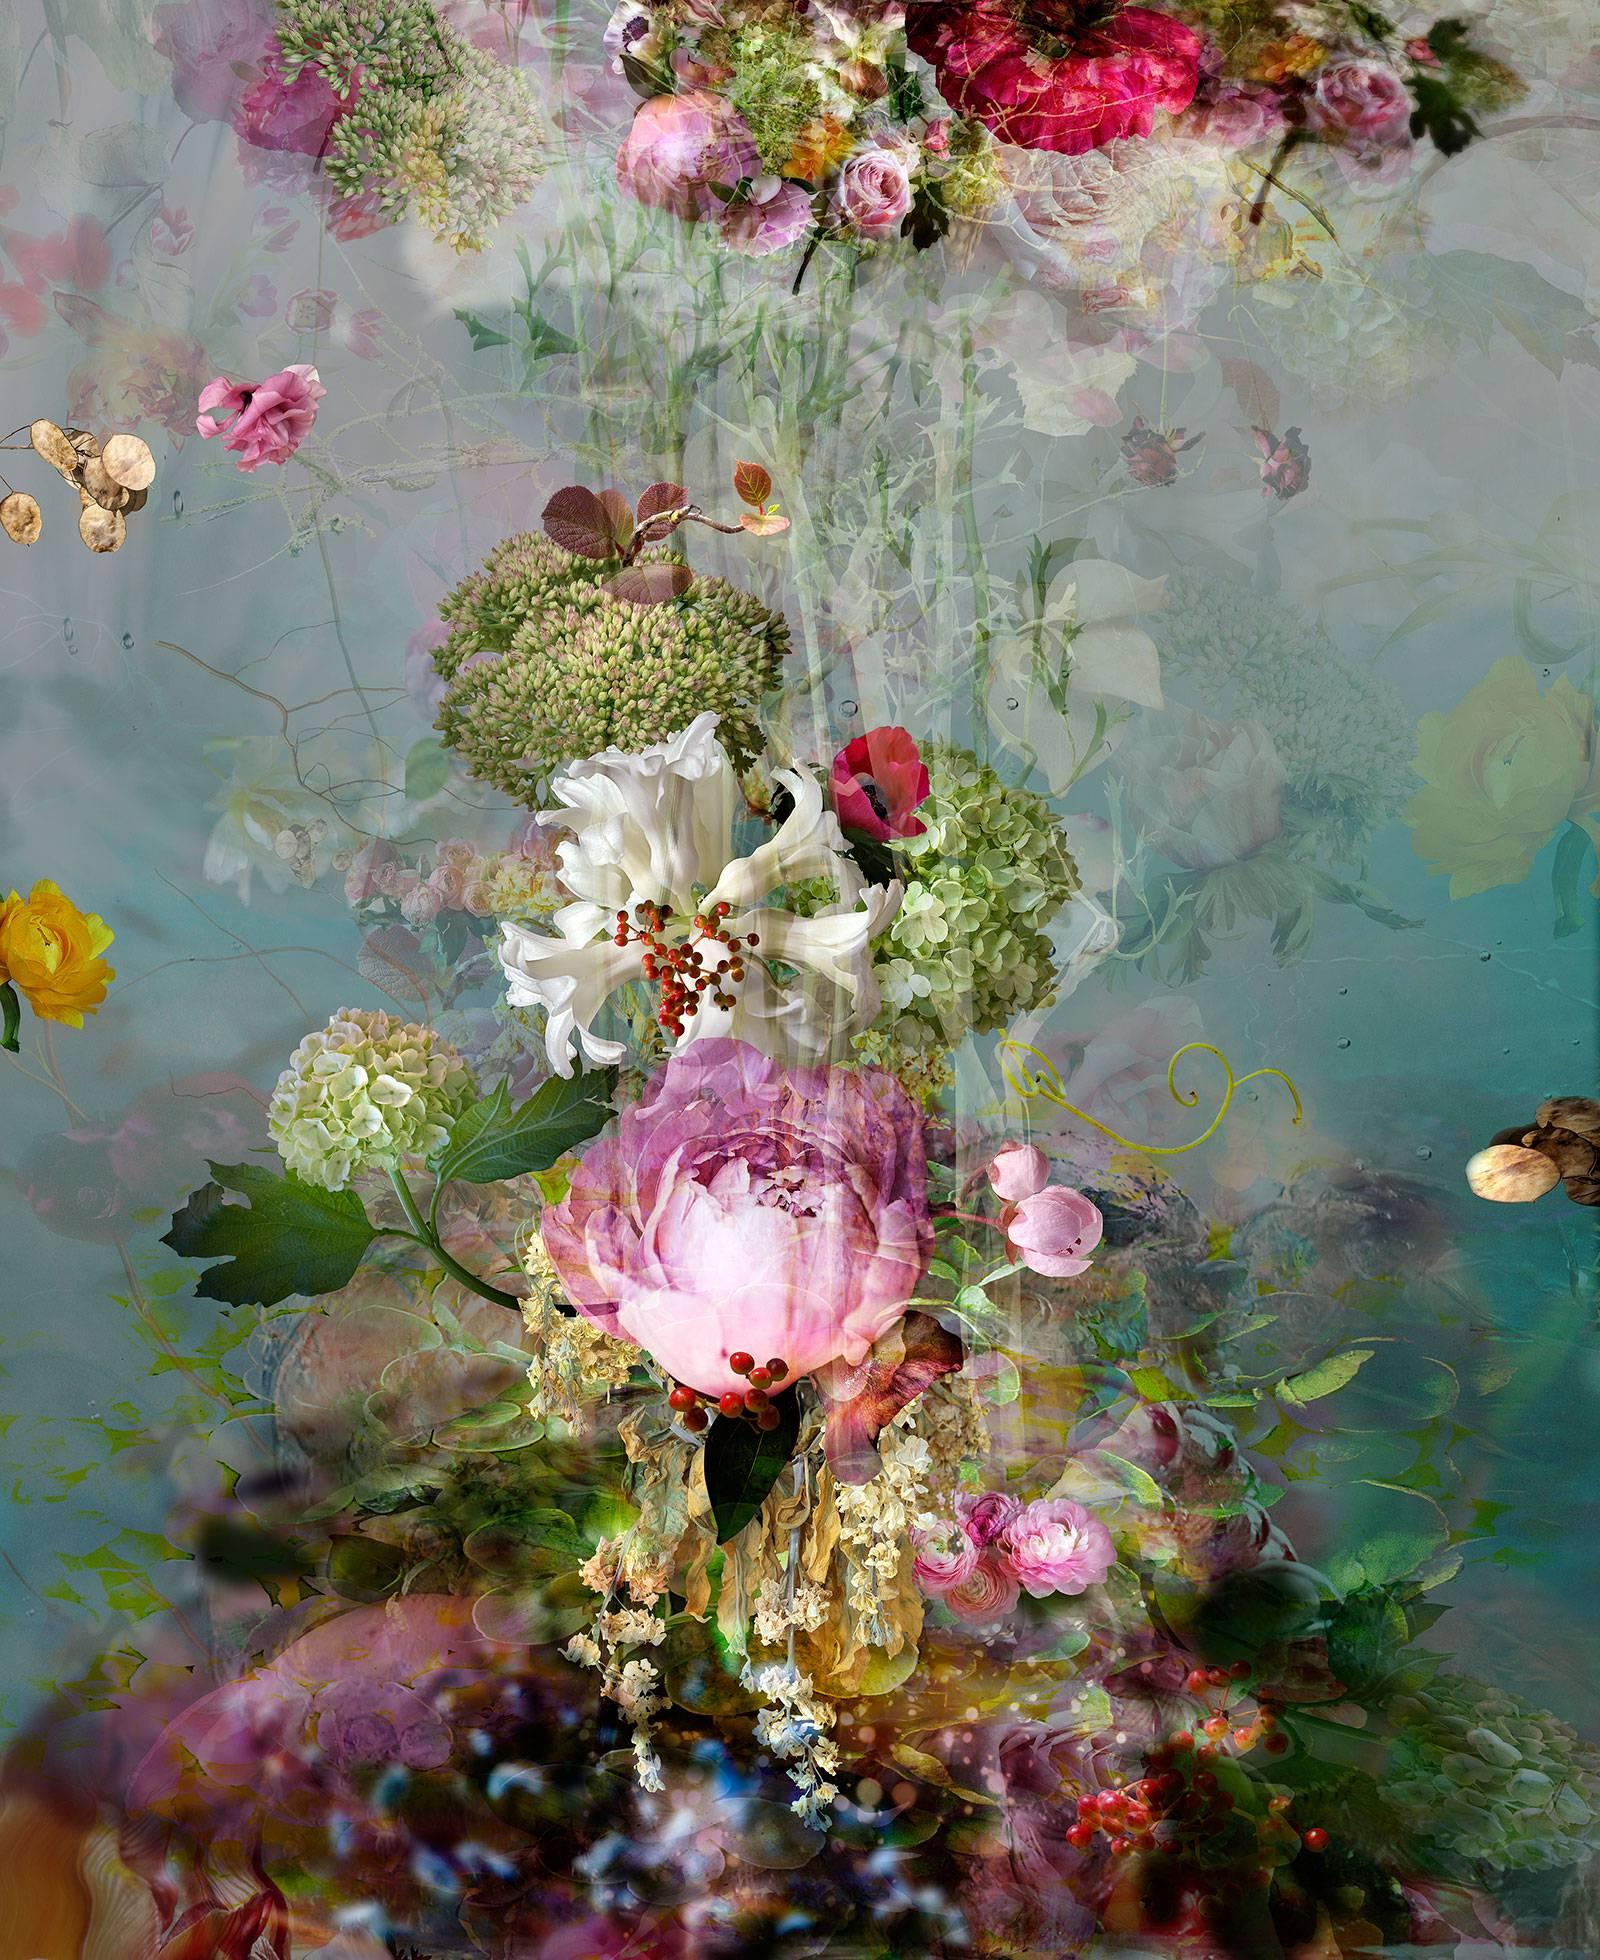 Sinking #3 - abstraktes Stillleben mit Blumen, zeitgenössische farbenfrohe Fotografie